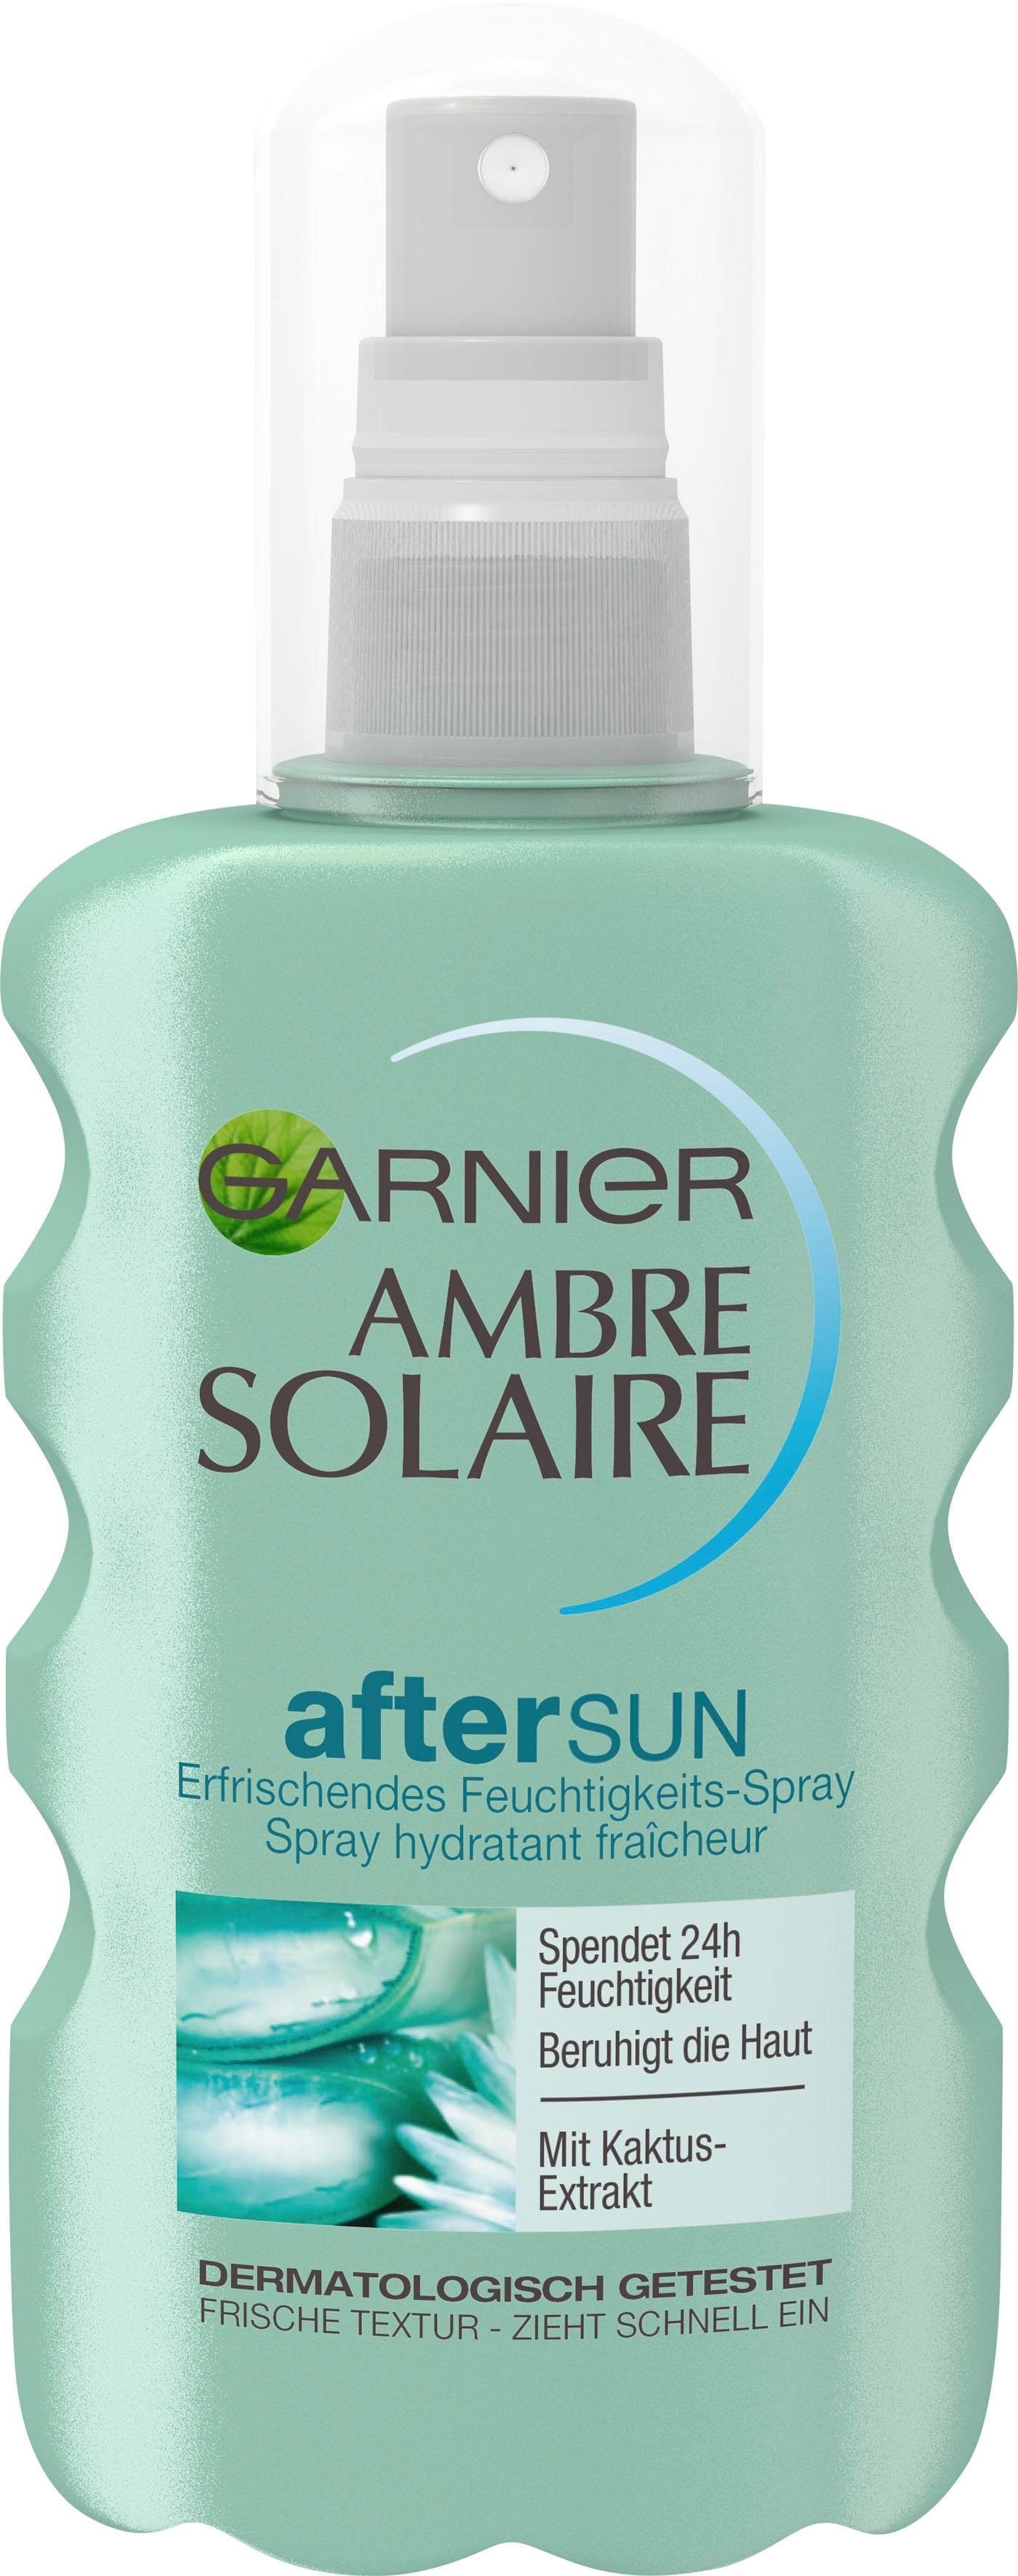 After mit Feuchtigkeits-Après, Sun-Spray GARNIER Ambre Solaire Kaktus-Extrakt